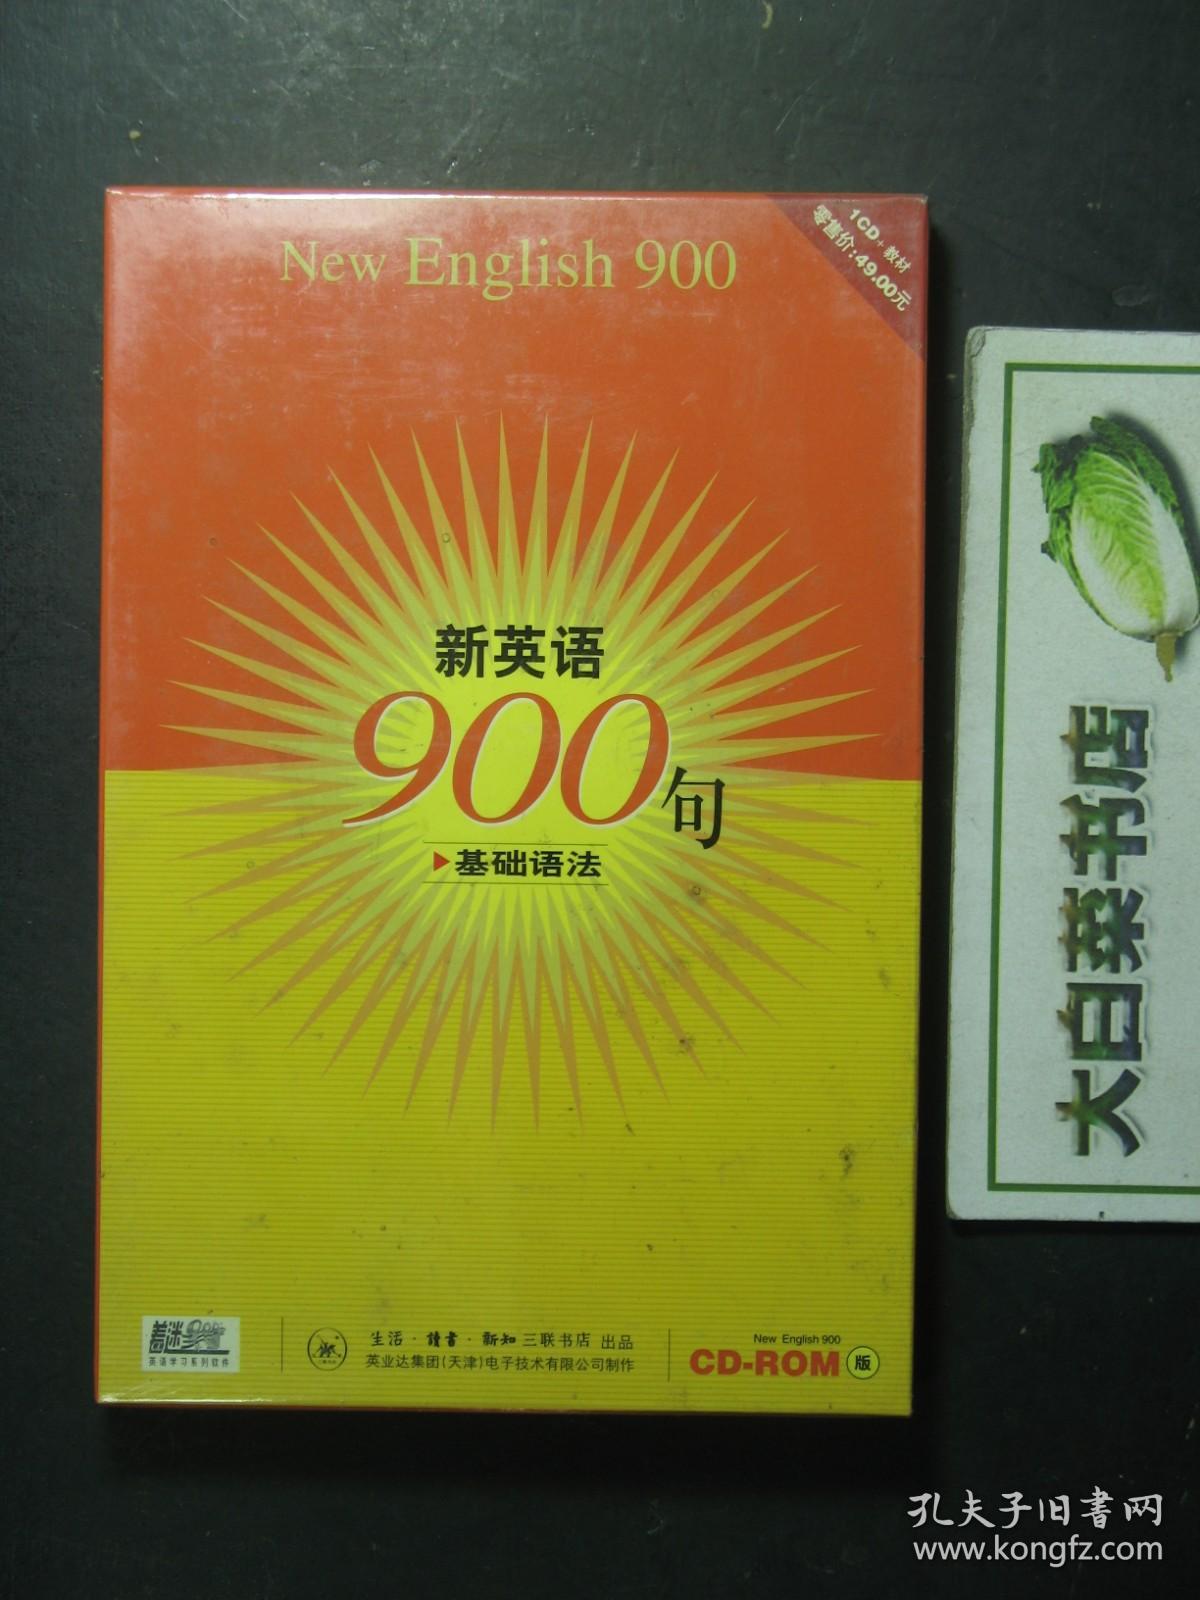 光盘 新英语900句CD-ROM 基础语法 1CD+教材 全新有塑封（54485)